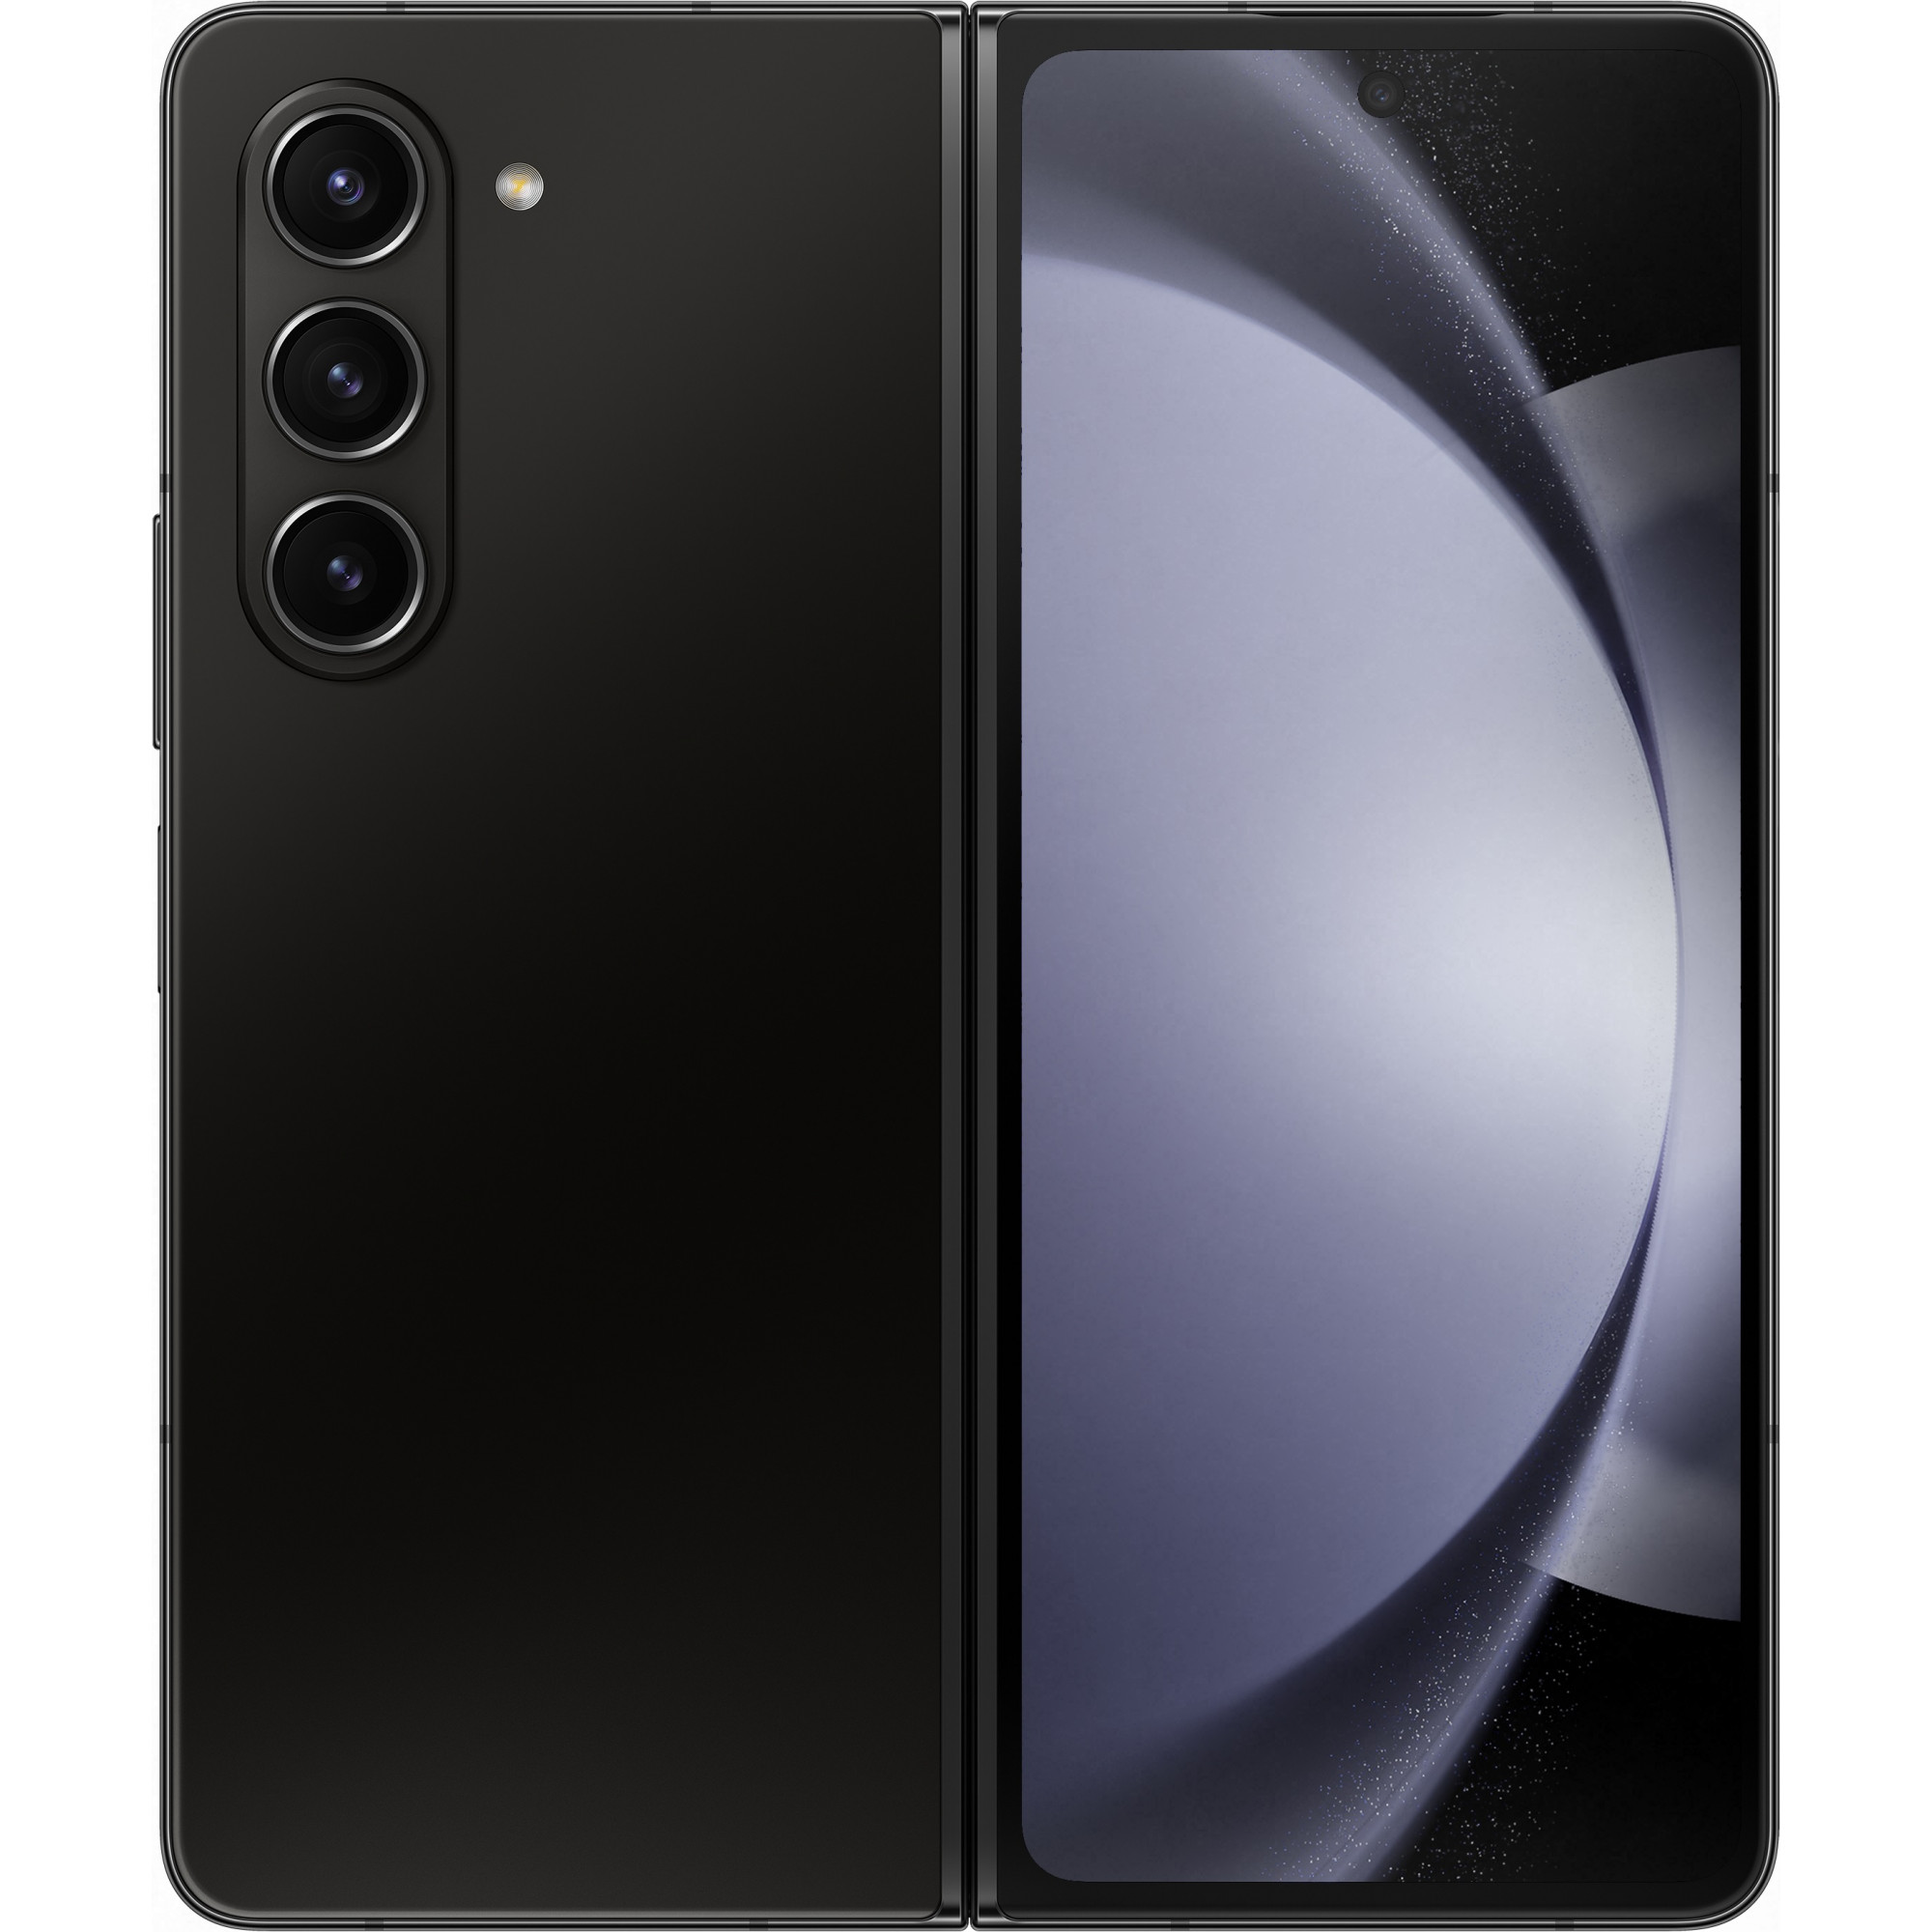 Samsung Galaxy Fold5 12/1TB Phantom Black (SM-F946BZKN) - зображення 1